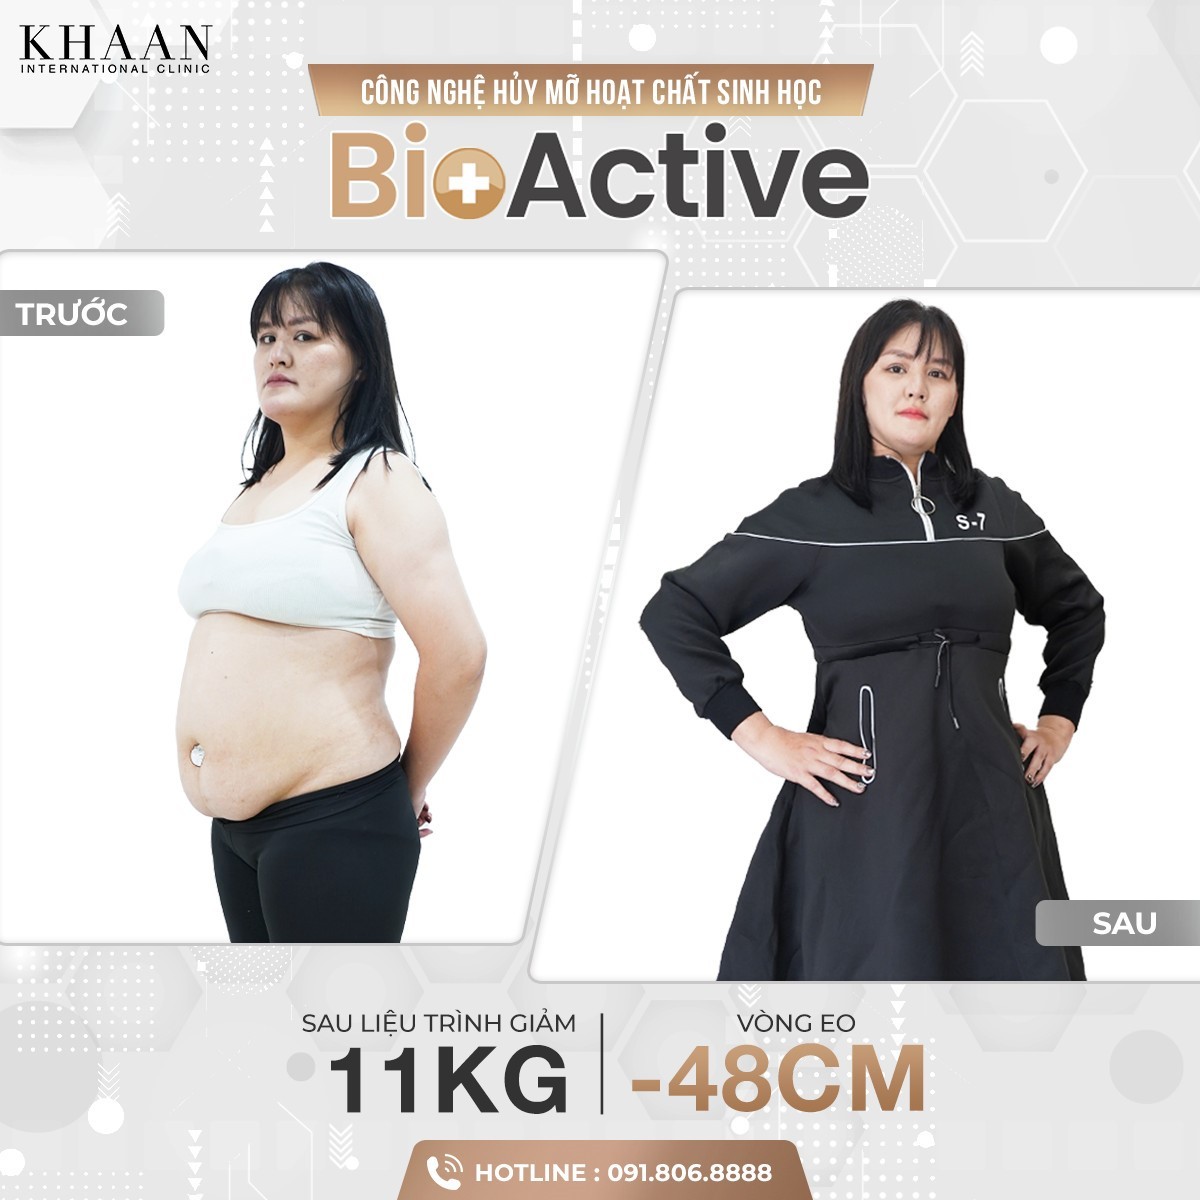 Sự khác biệt giữa hủy mỡ hoạt chất sinh học Bioactive và những phương pháp giảm béo thông thường